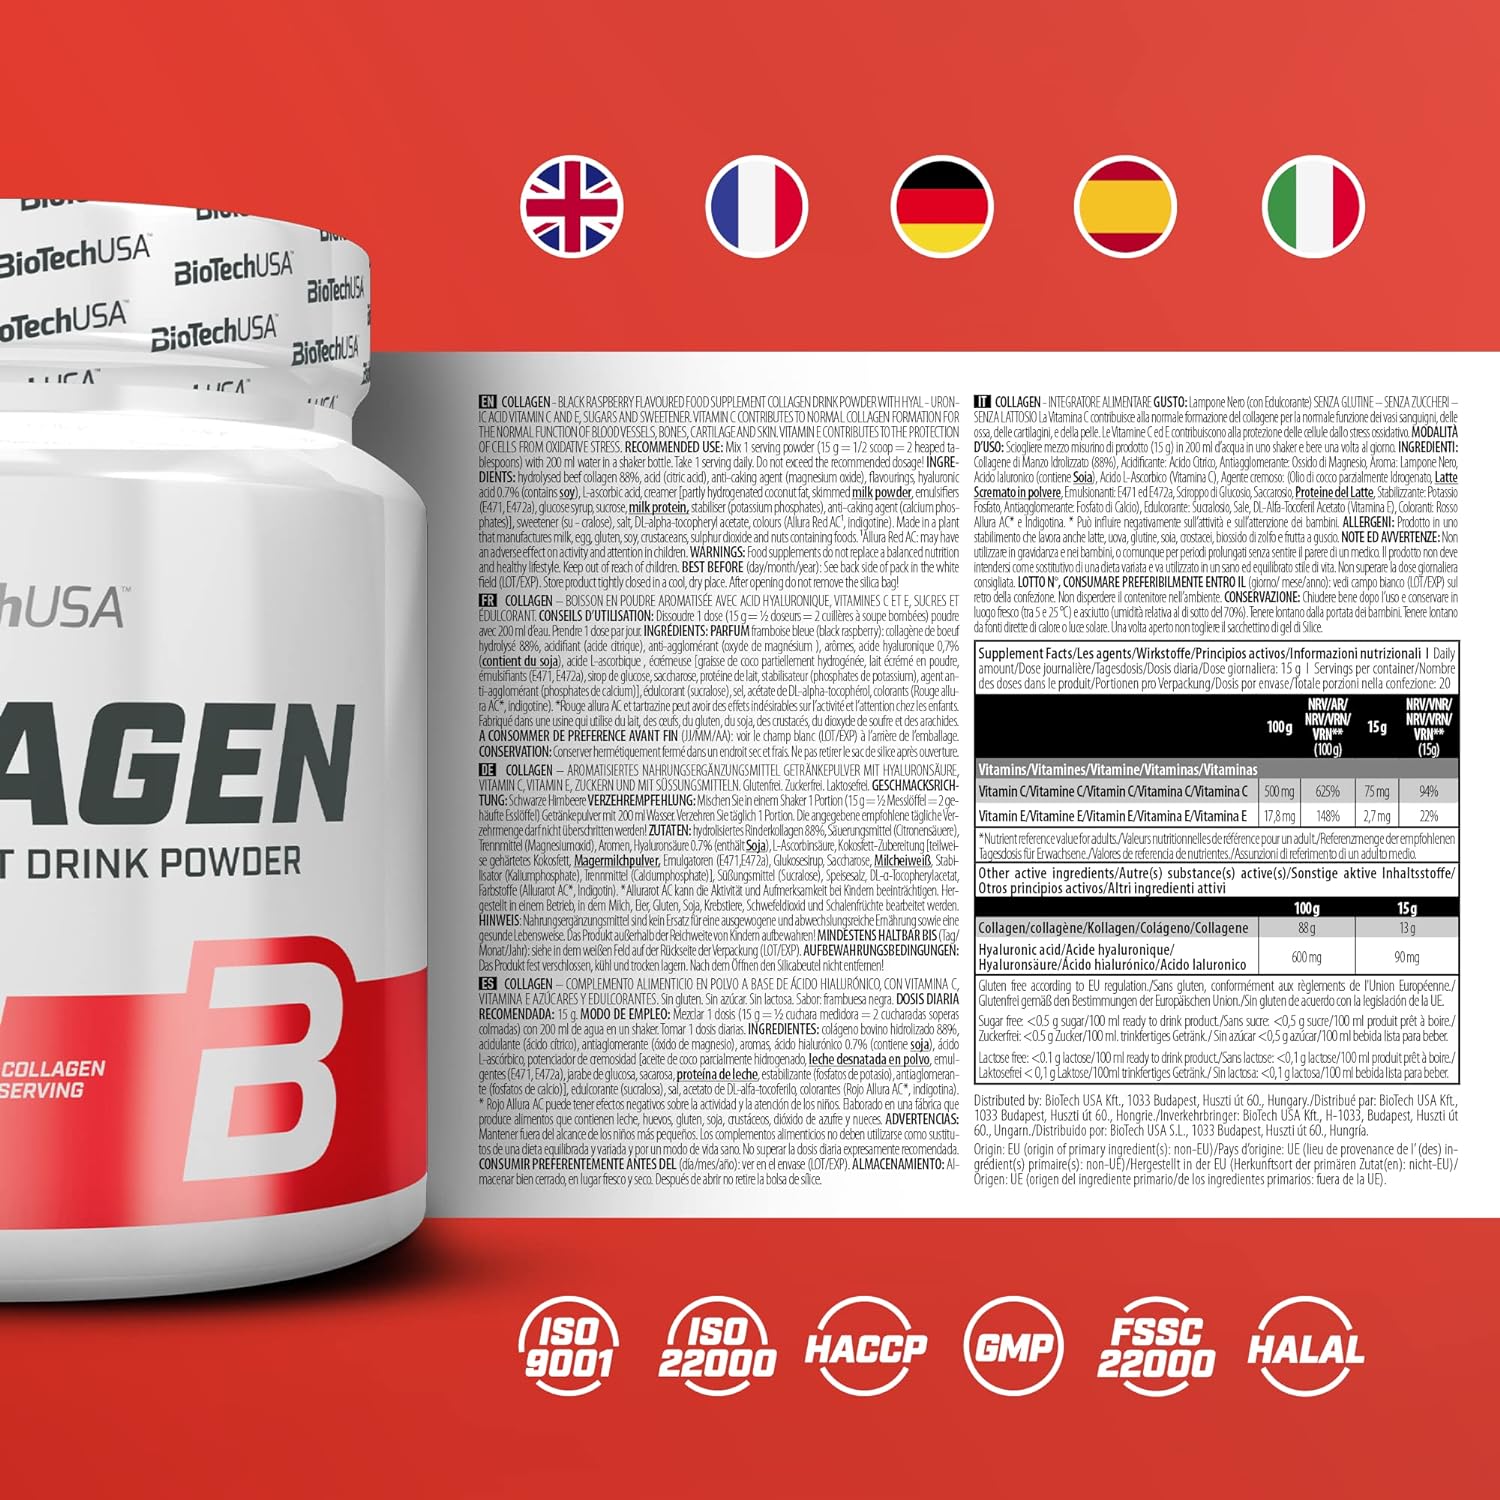 BioTechUSA Collagen, Dietary Supplement Drink Powder with Collagen, hy